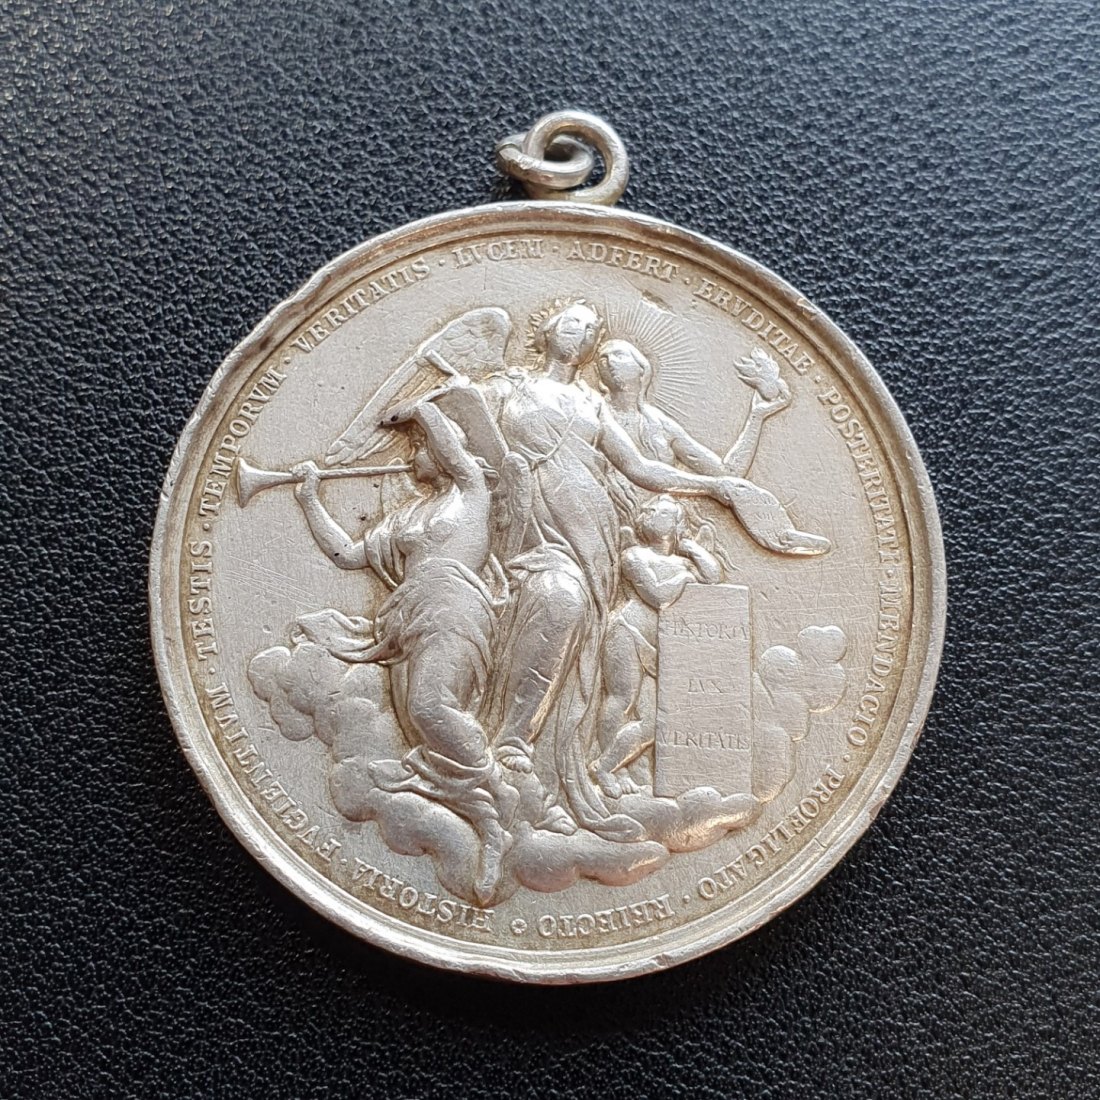  Medaille Silber 33,688 gr. 43,48 mm Papst Leo XIII Pont Max An VIII gehenkelt   